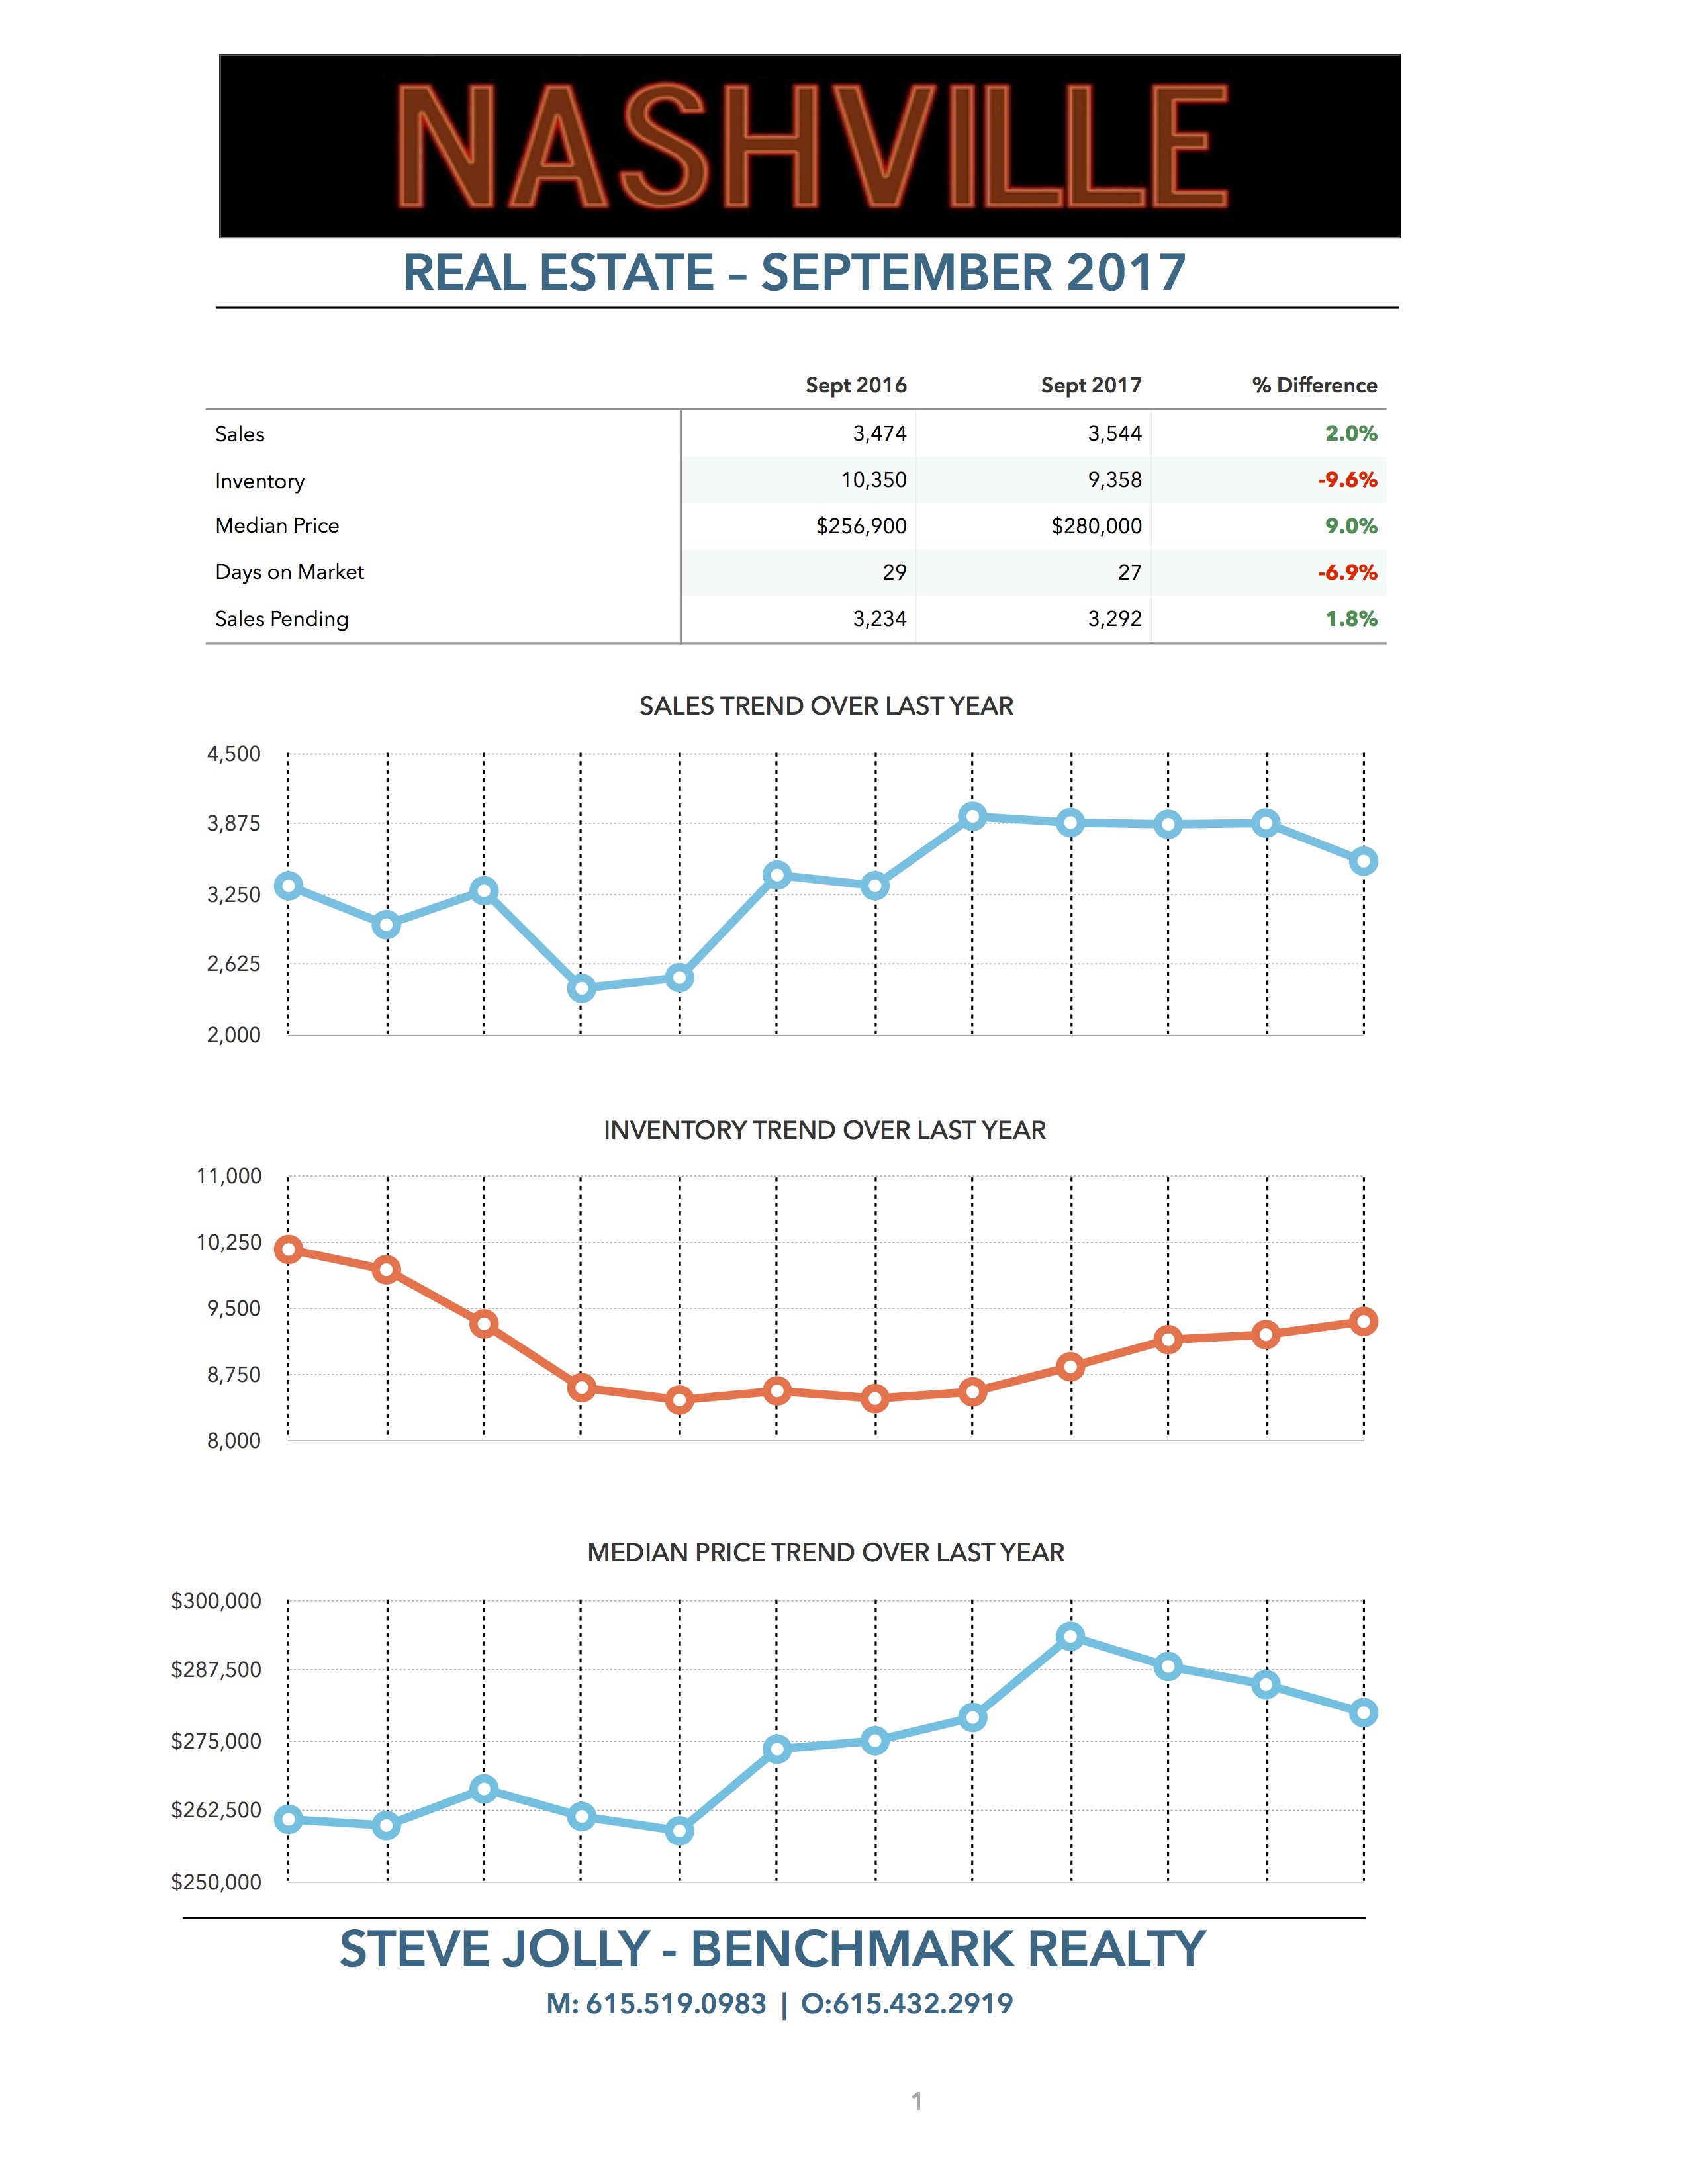 Nashville Real Estate Trends - Sept 2017